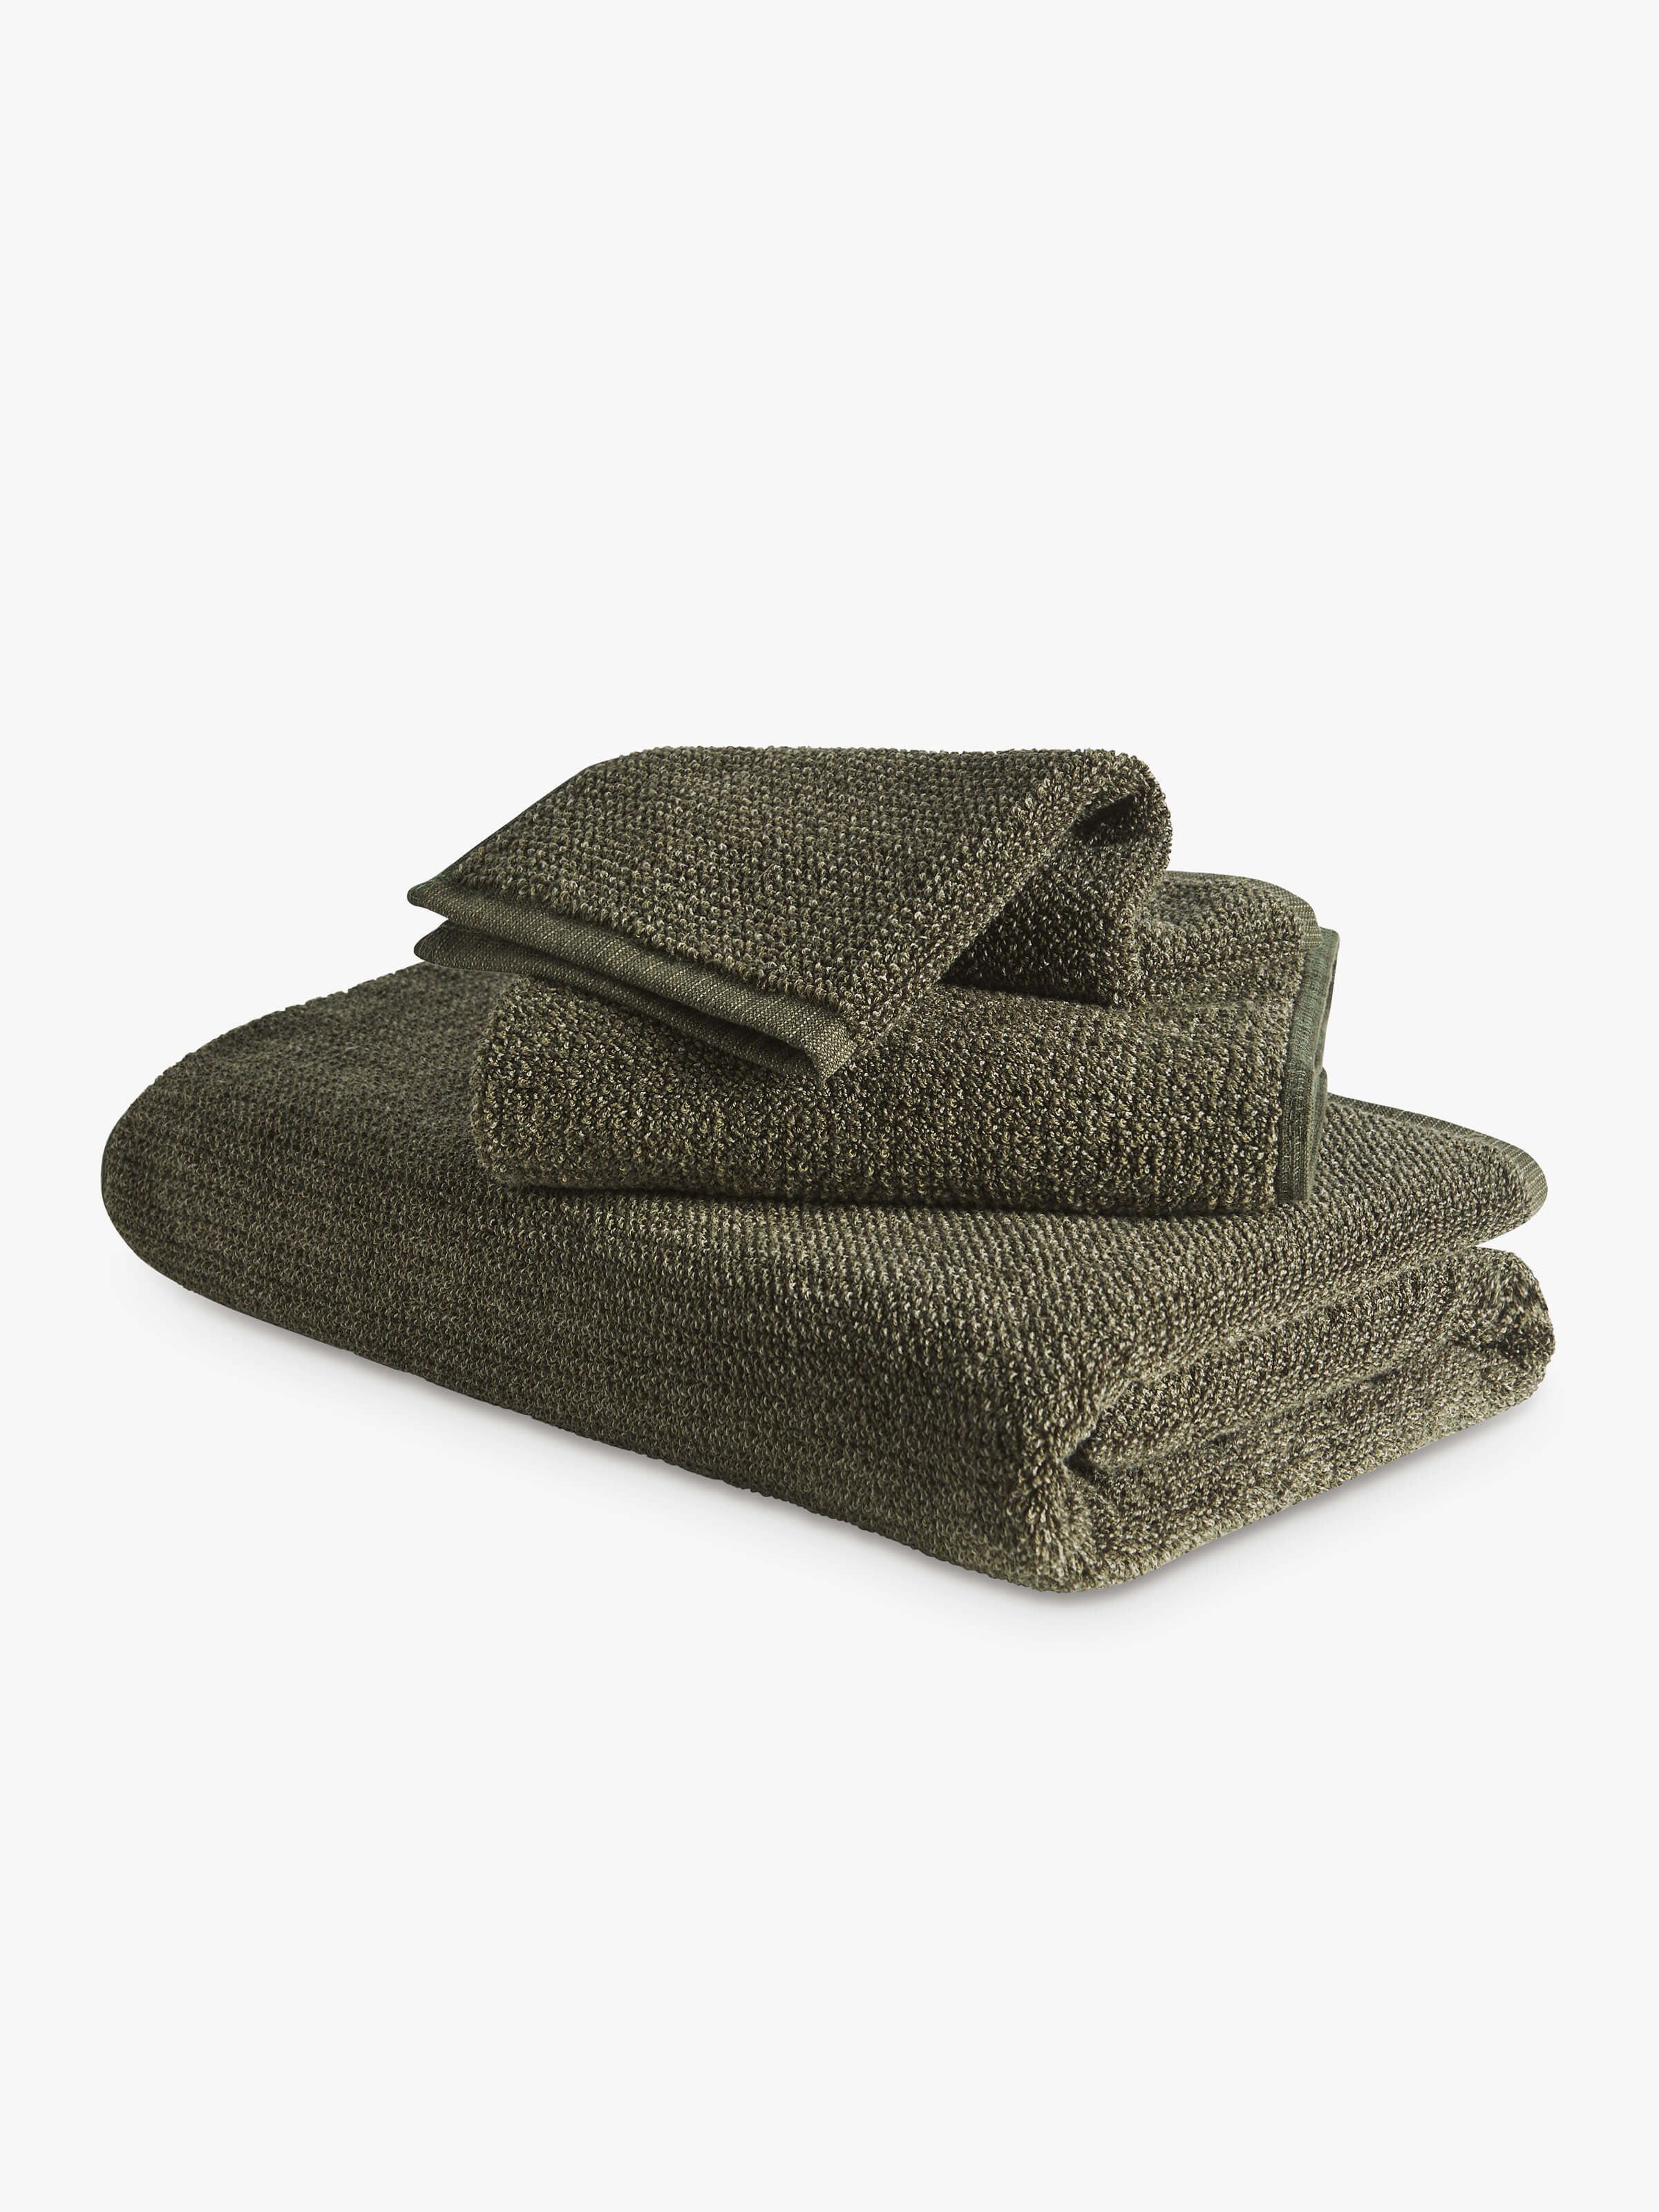 Tweed Olive Towels